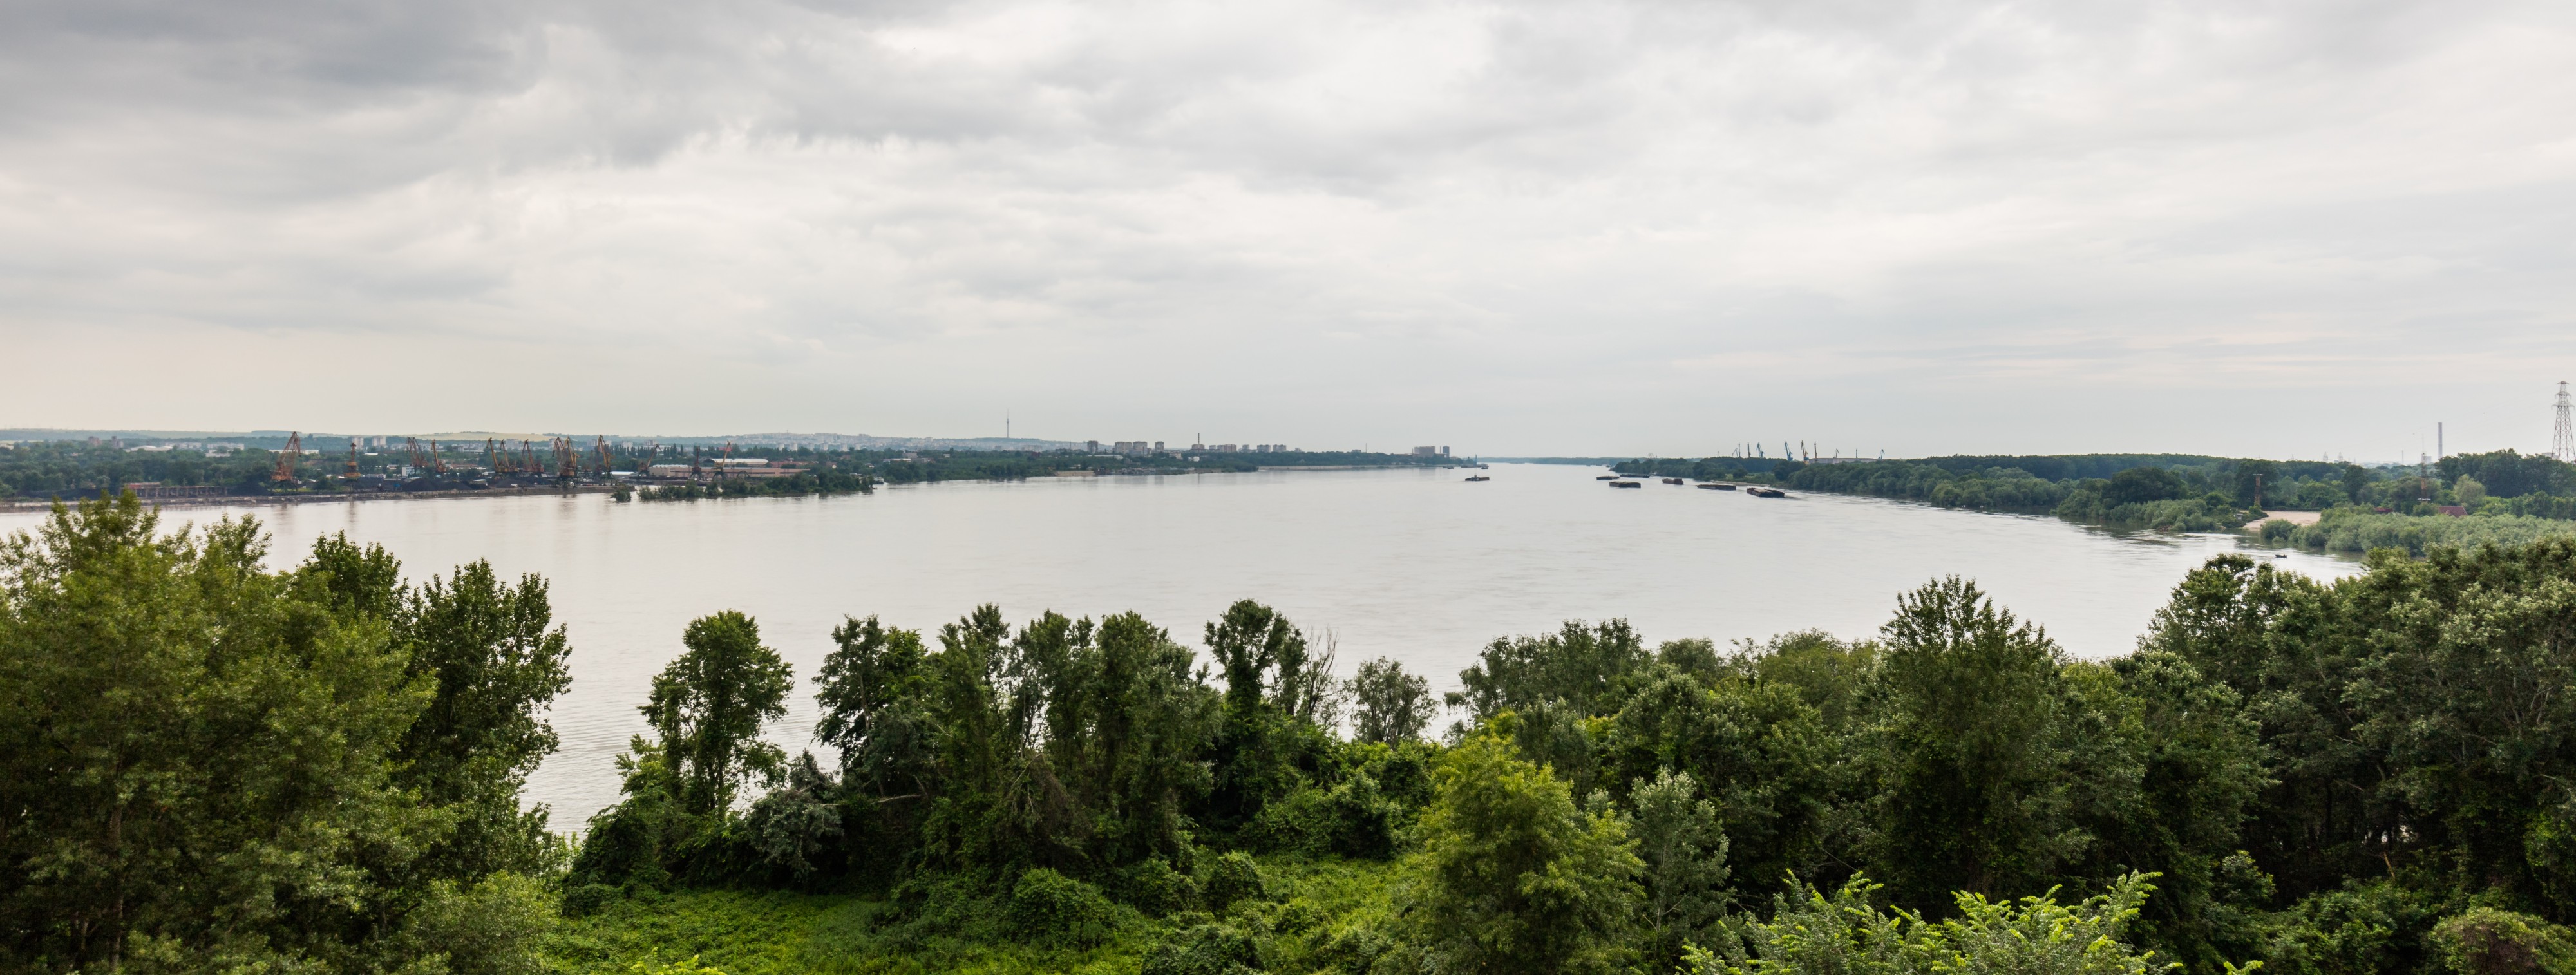 Danubio a su paso por Ruse, Bulgaria, 2016-05-27, DD 01